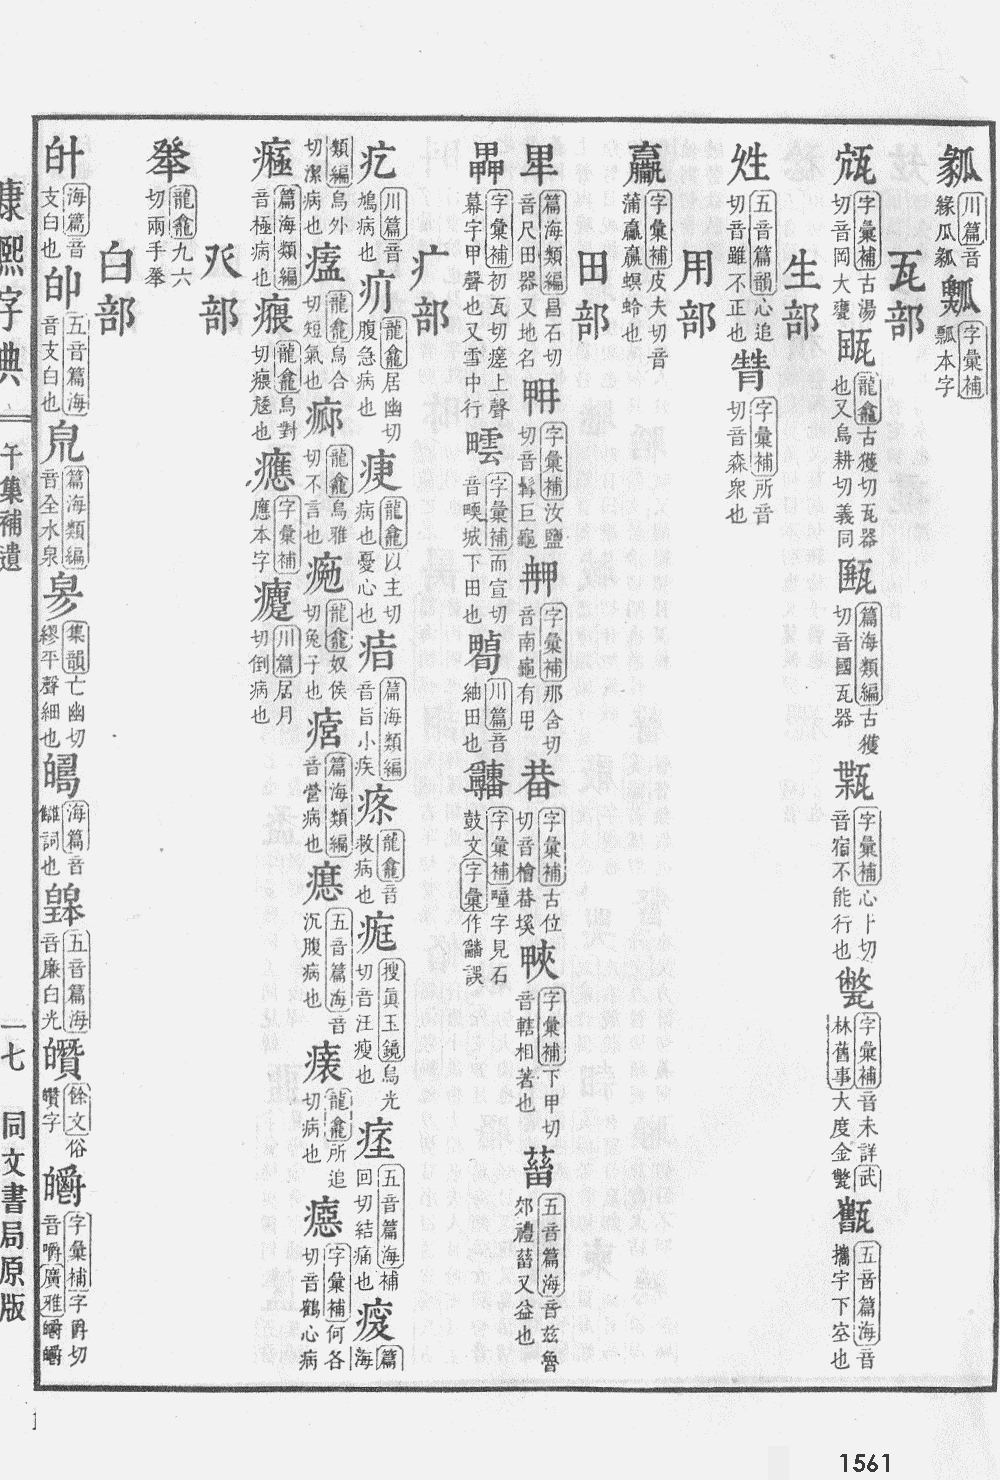 康熙字典掃描版第1561頁